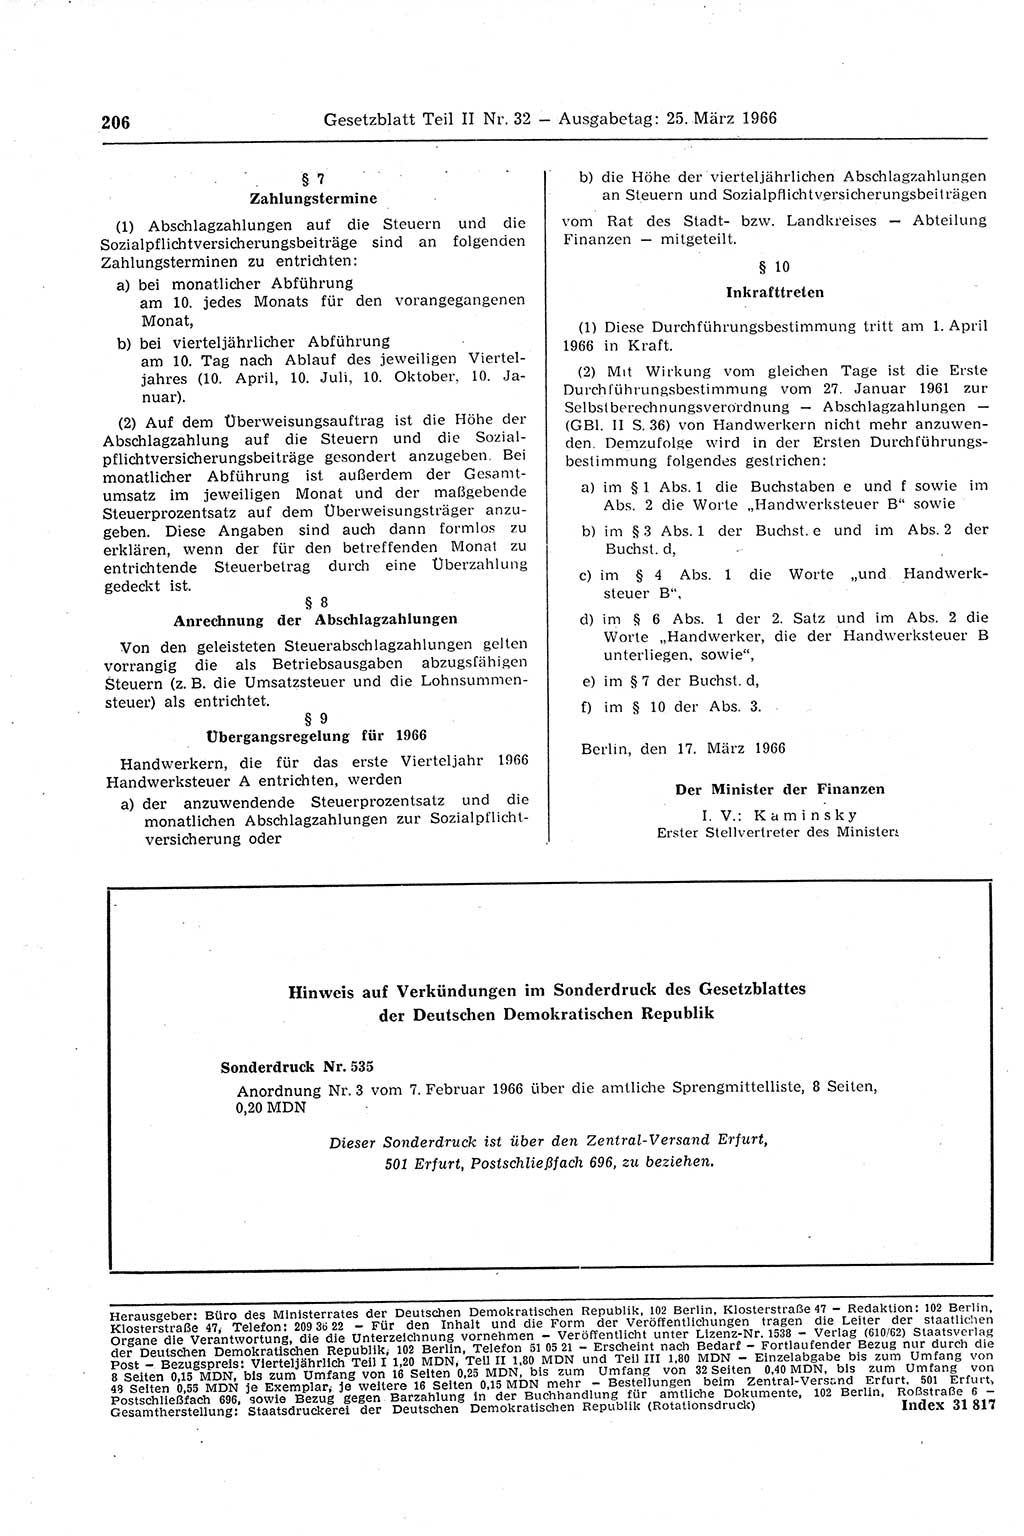 Gesetzblatt (GBl.) der Deutschen Demokratischen Republik (DDR) Teil ⅠⅠ 1966, Seite 206 (GBl. DDR ⅠⅠ 1966, S. 206)